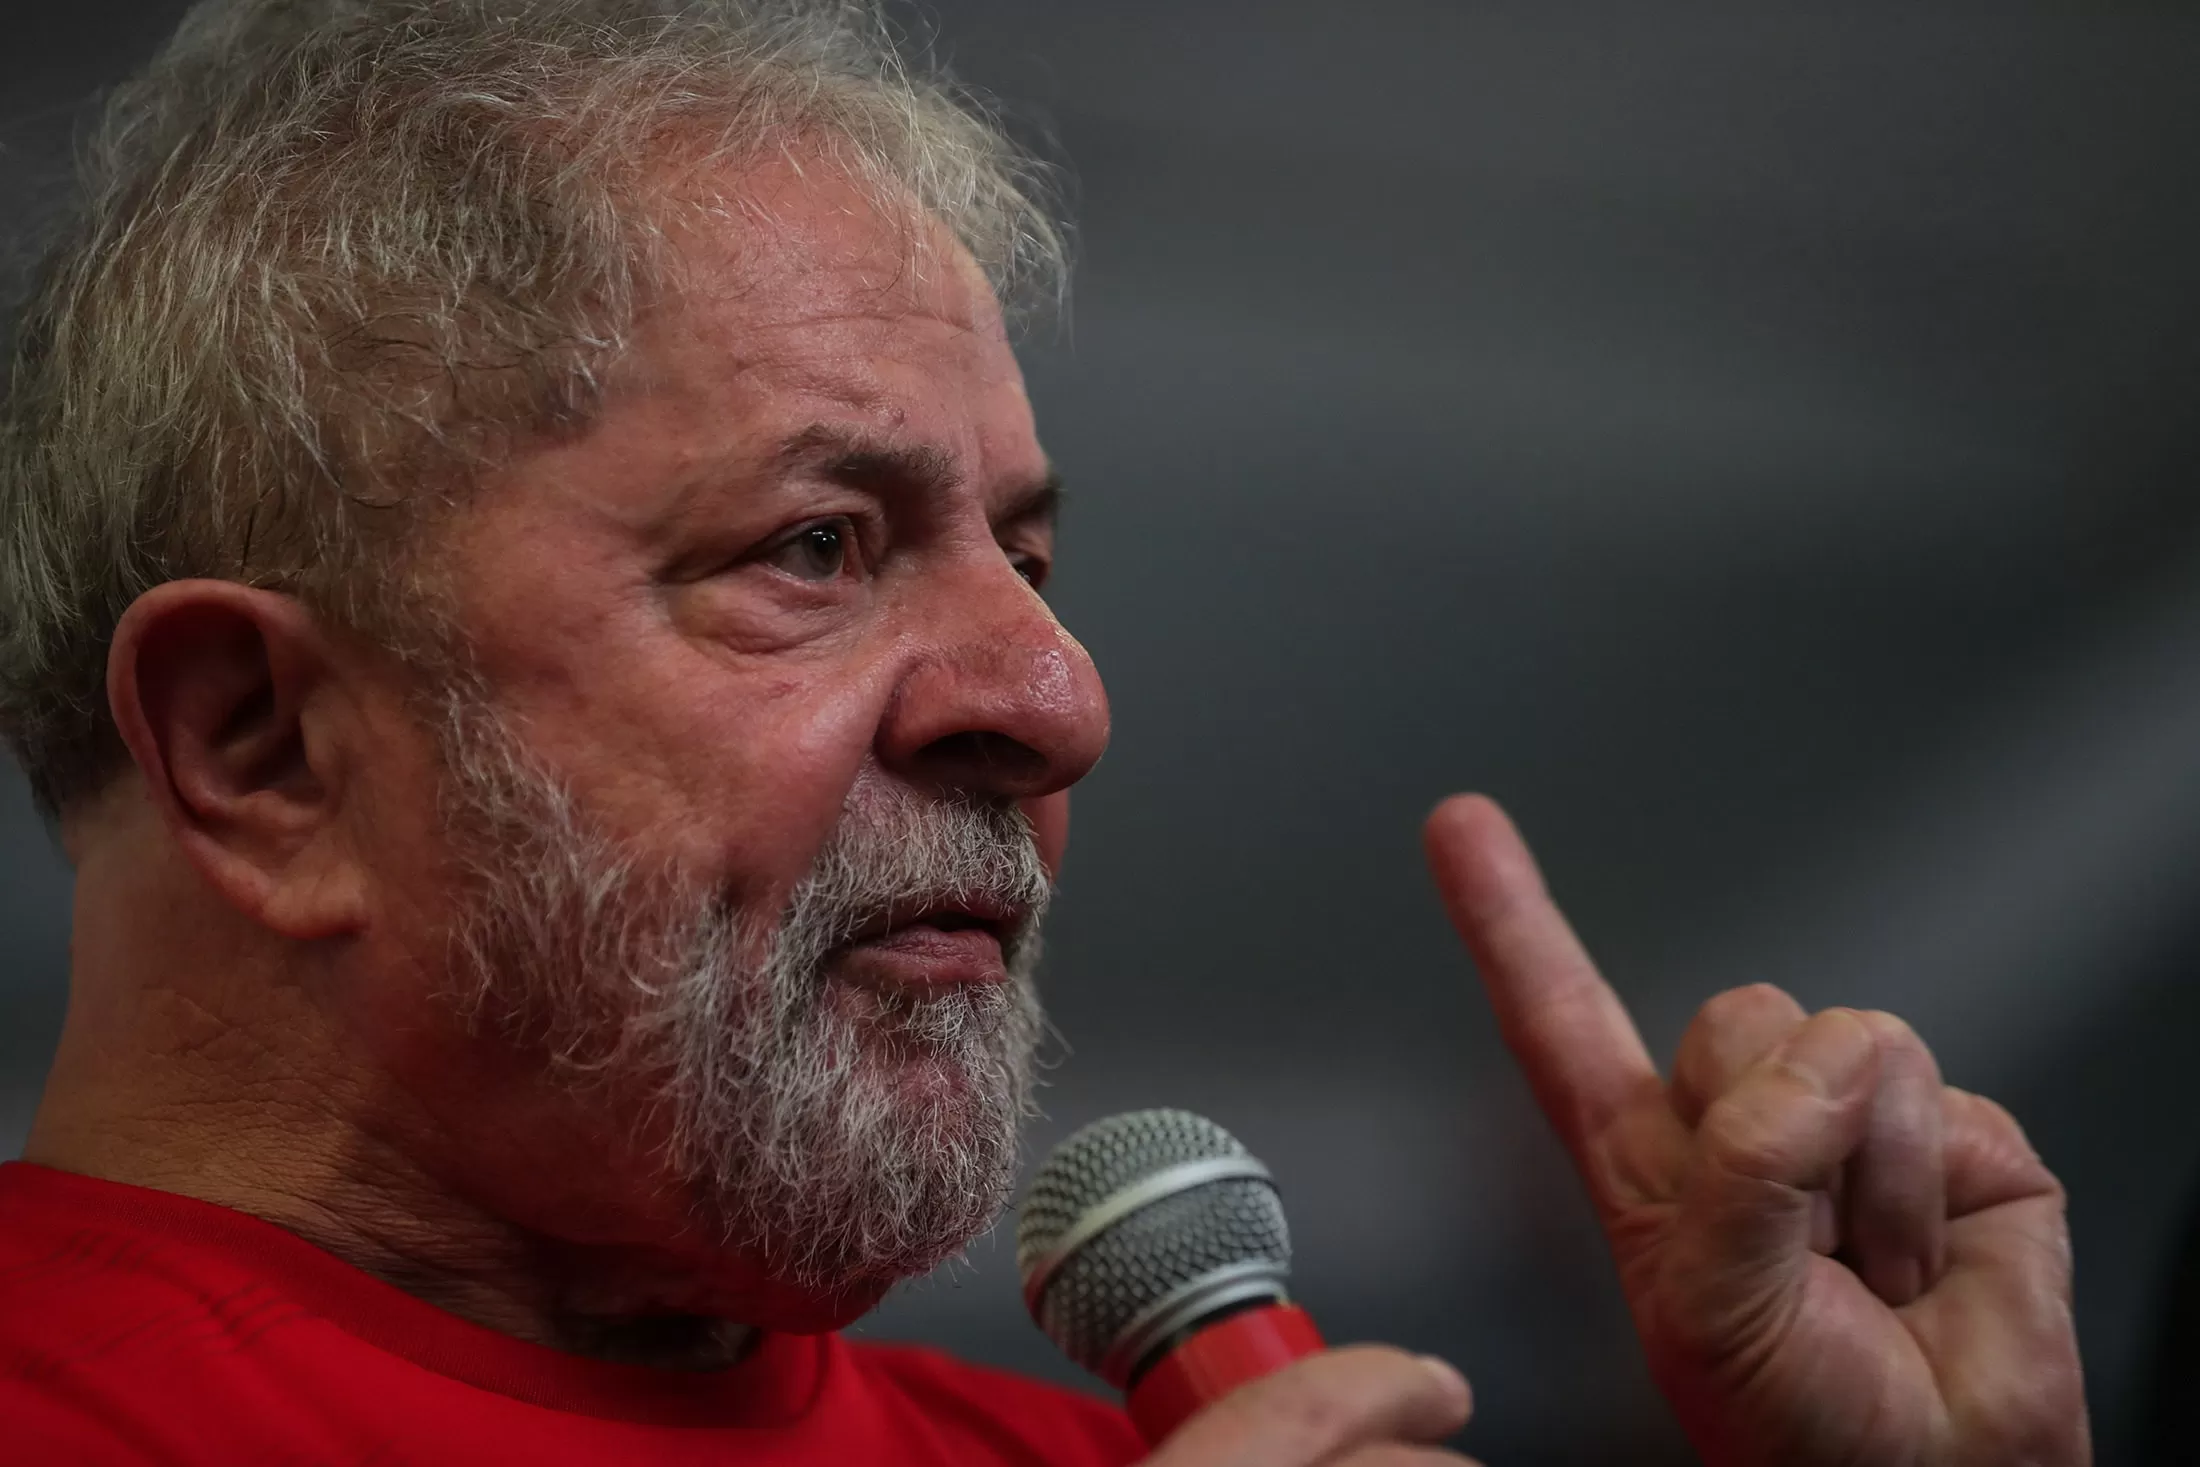 Un juez del Supremo brasileño anula todas las sentencias contra Lula